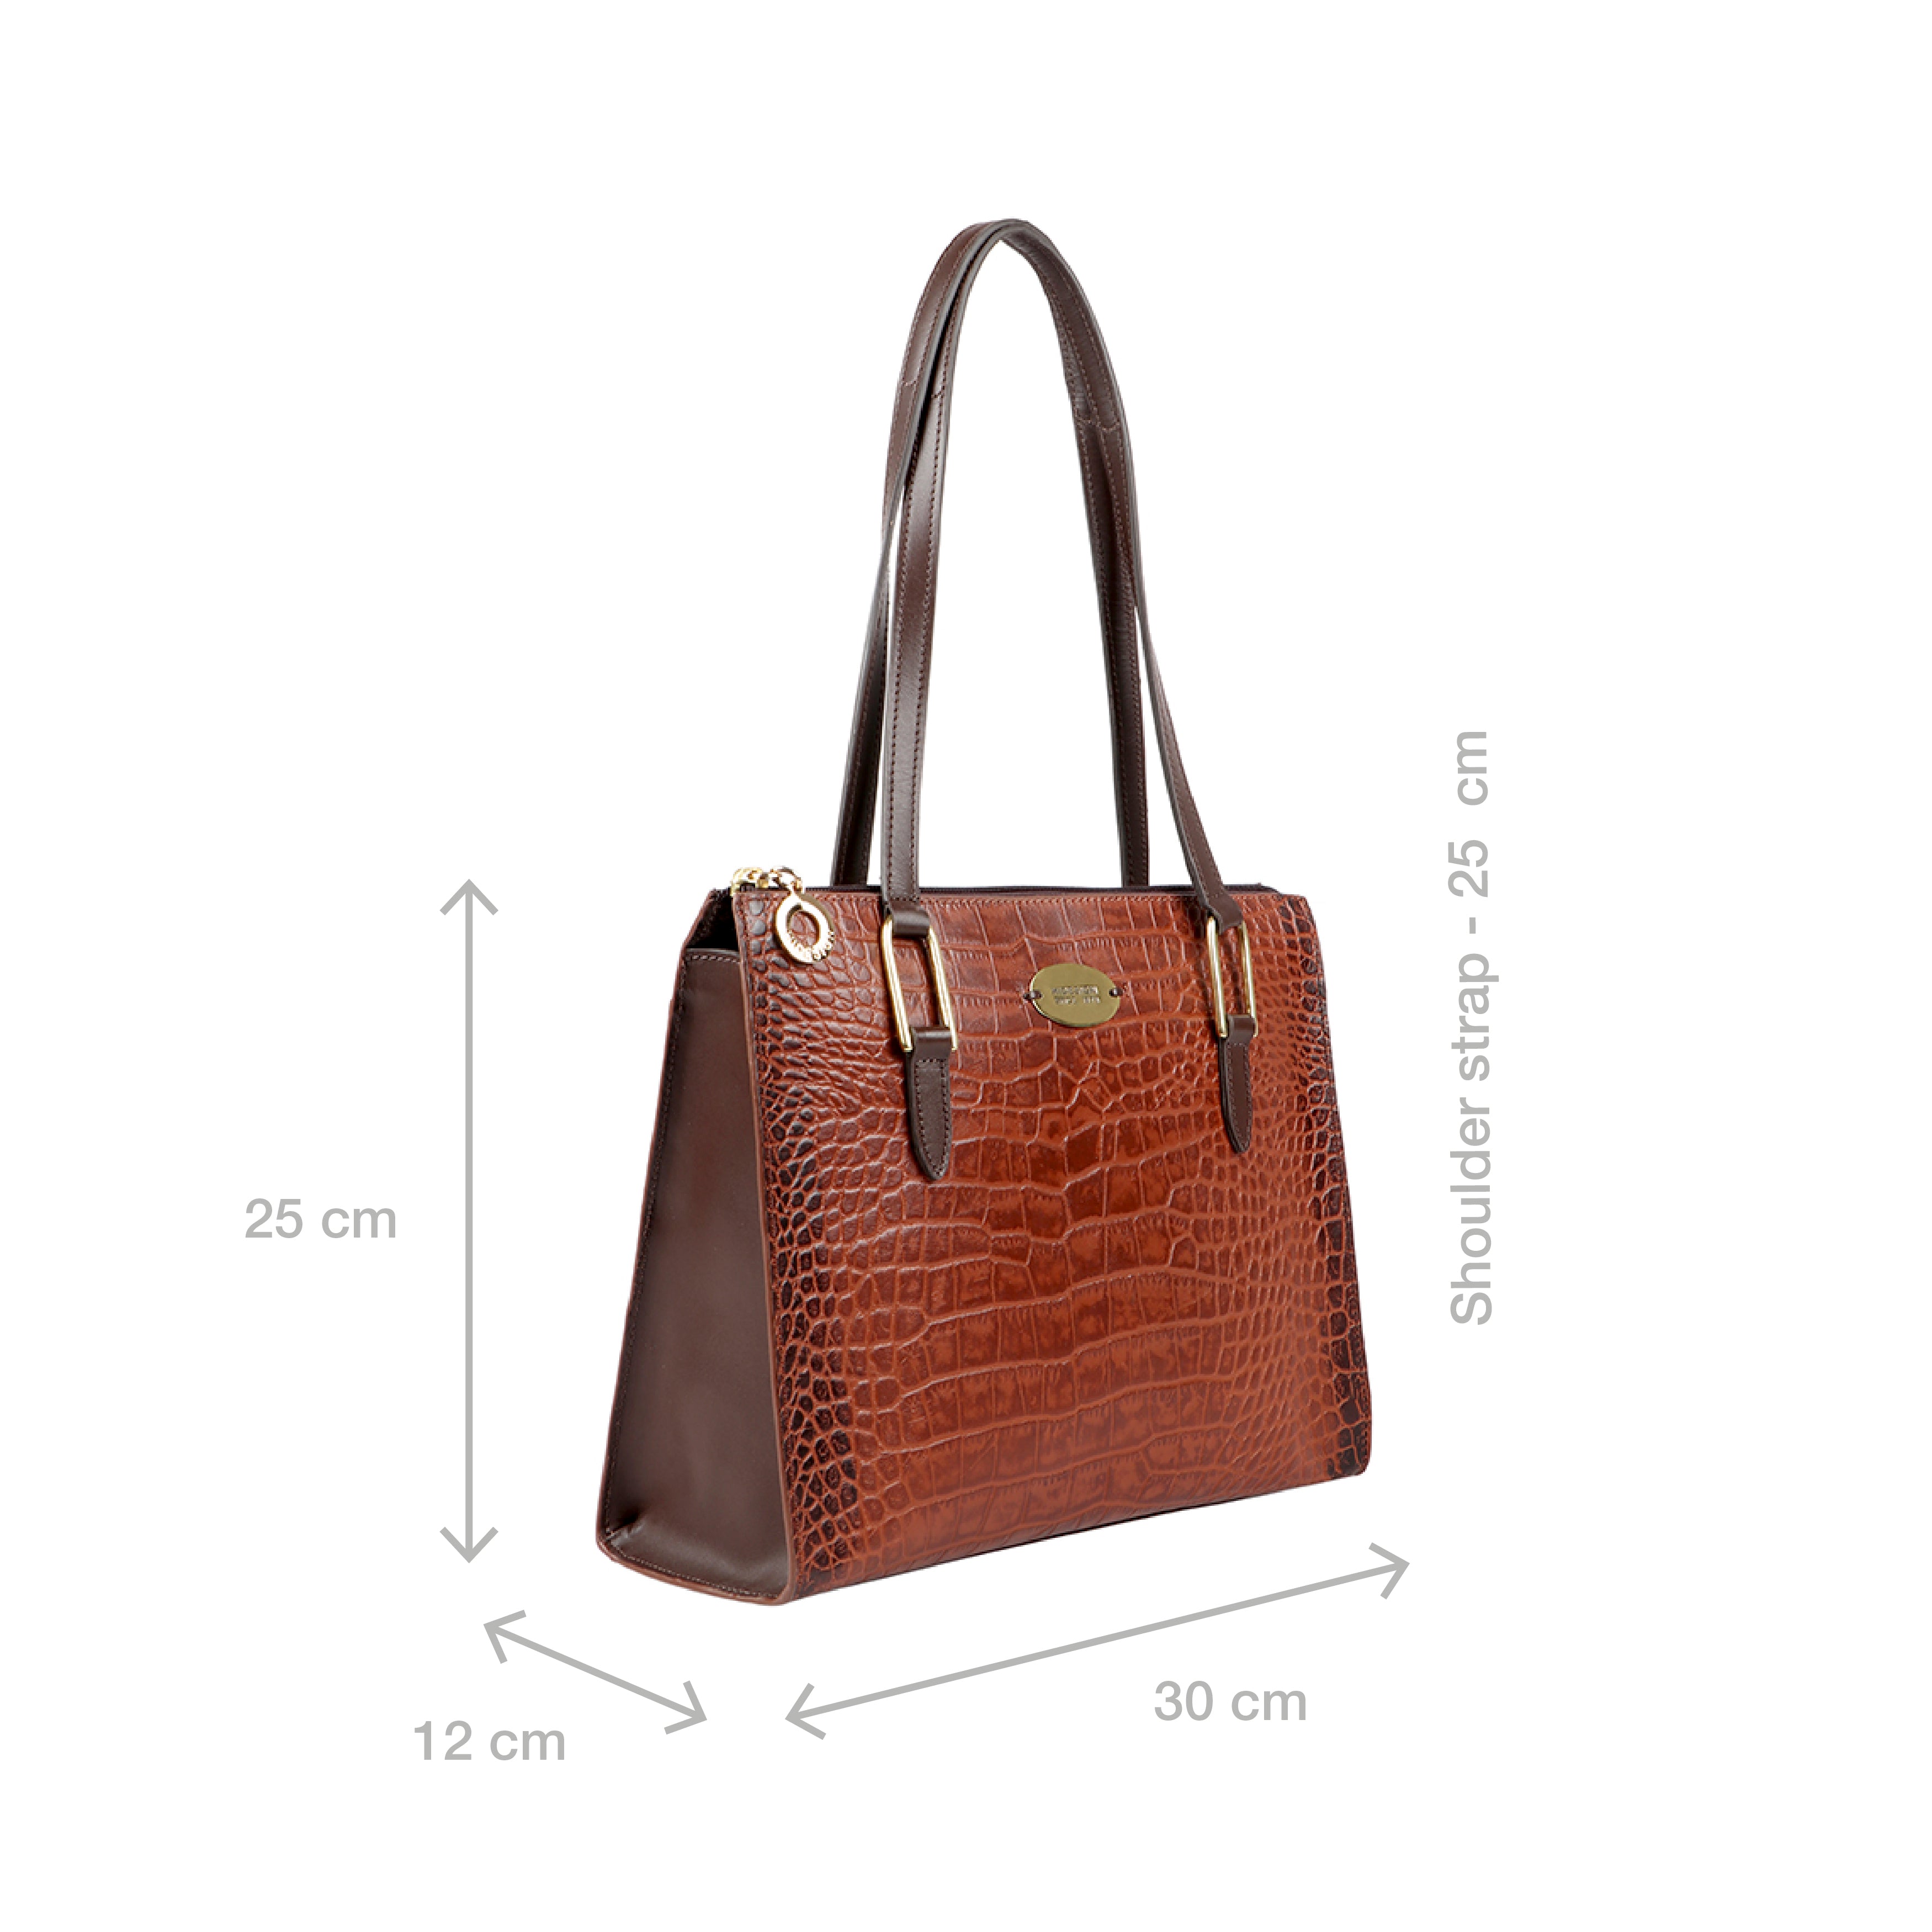 Buy Black Naia 03 Shoulder Bag Online - Hidesign